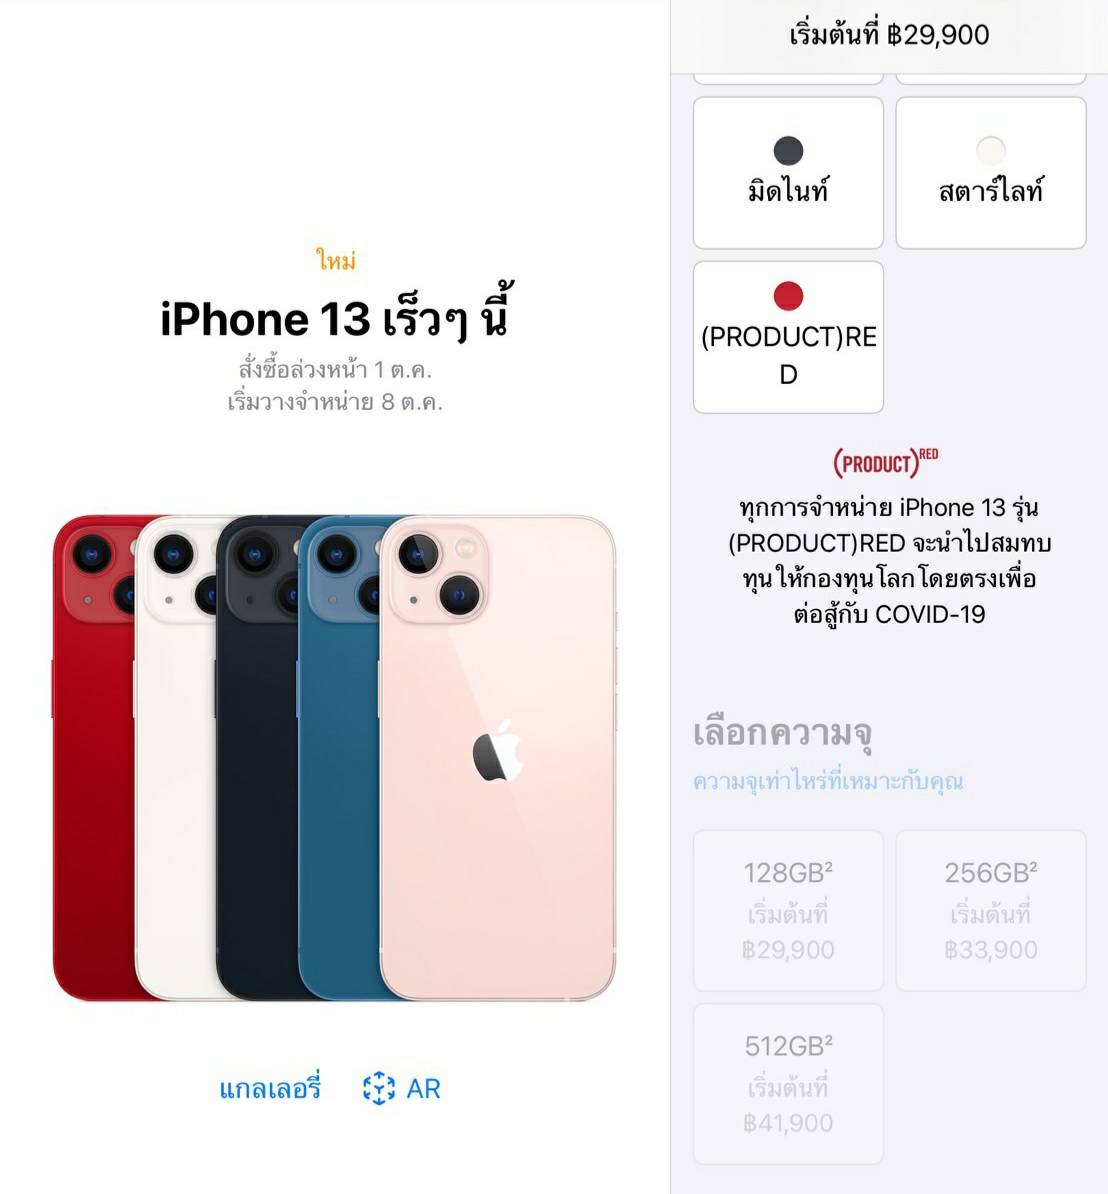 iphone 13 thailand